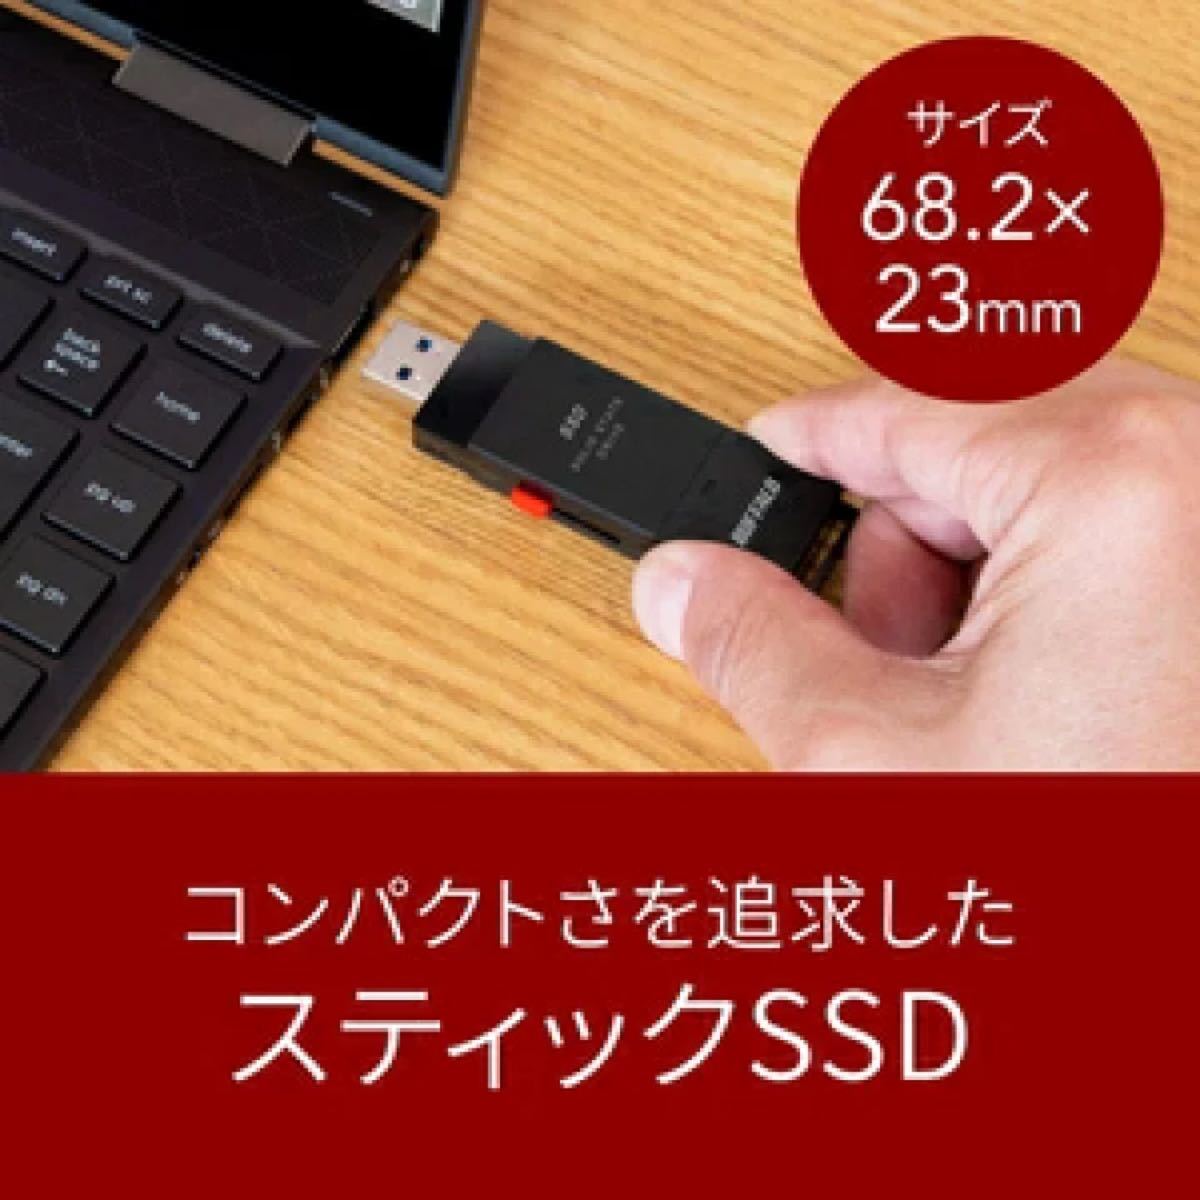 SSD-PUT250U3BC/N バッファロー USB 3.2(Gen 1)対応 外付けポータブルSSD 250GB